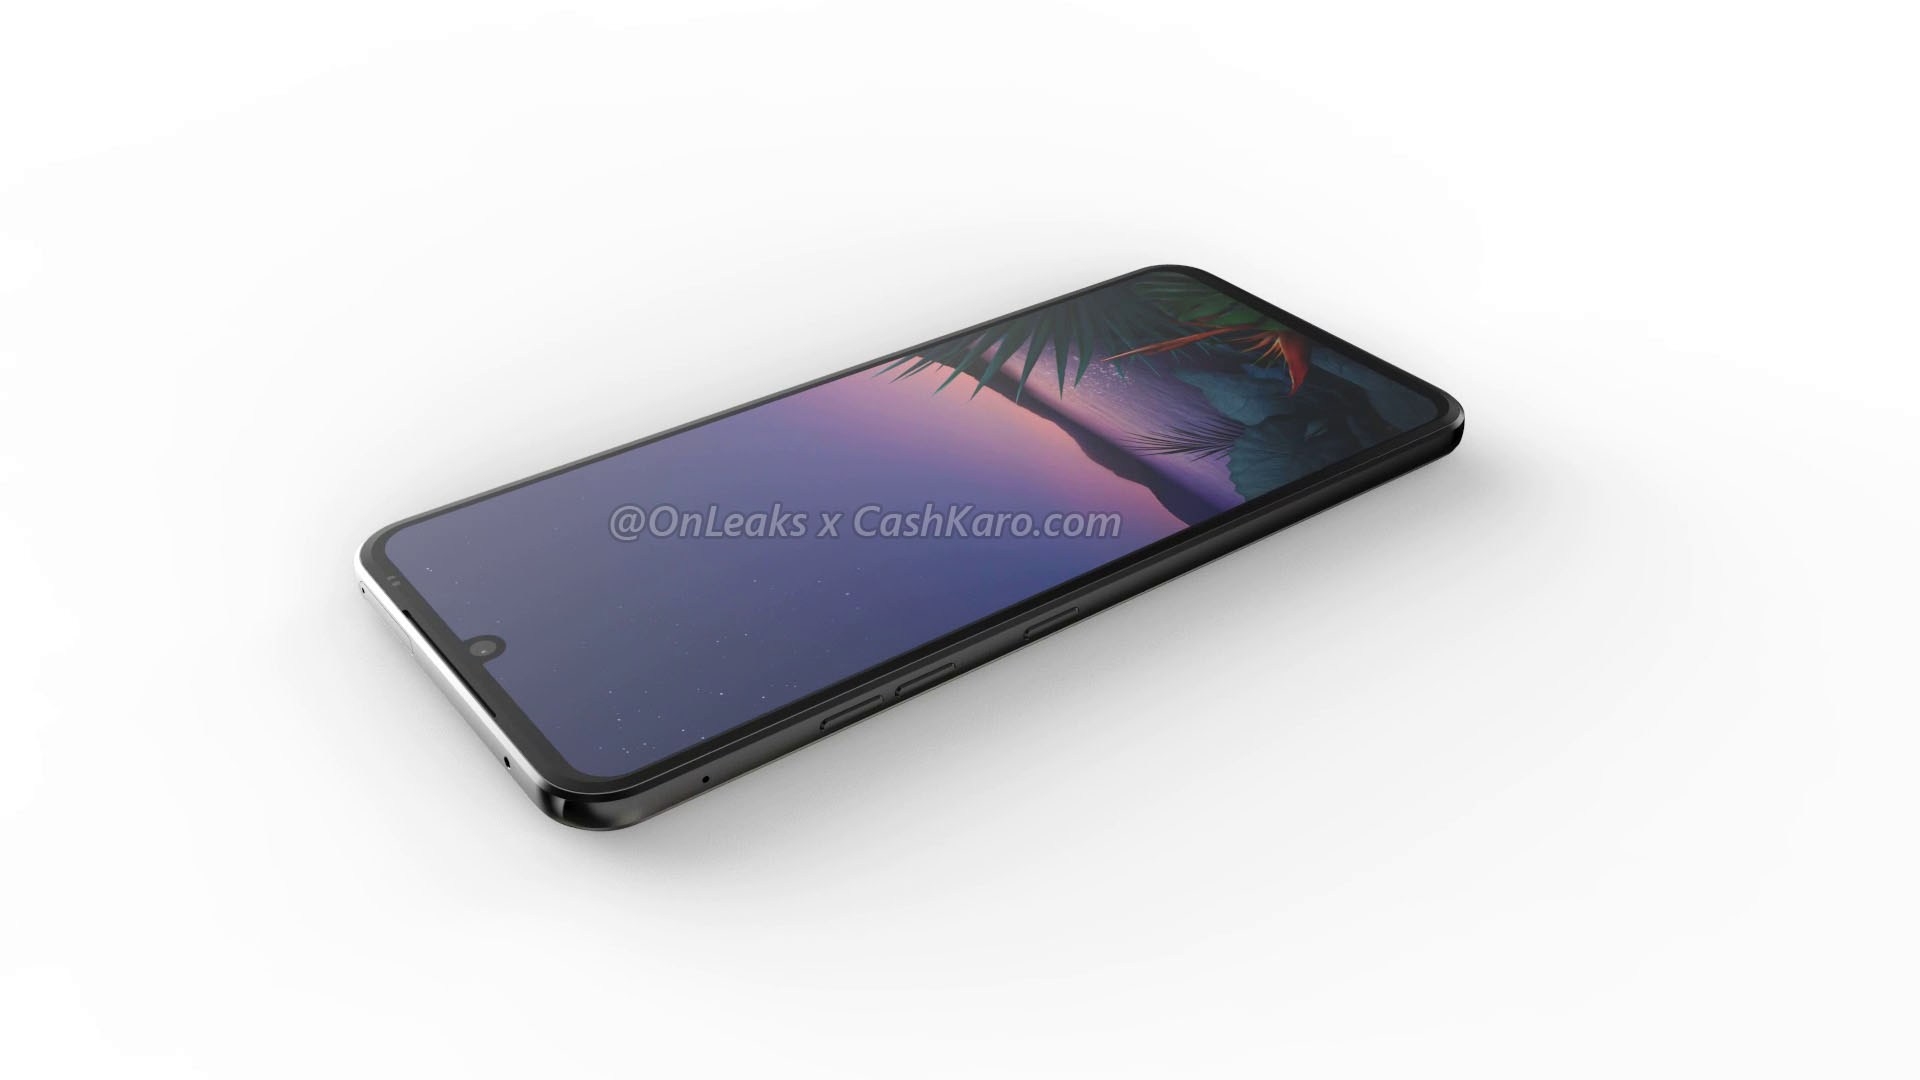 LG G9 lộ ảnh render với thiết kế màn hình giọt
nước, vân tay trong màn hình, 4 camera sau, có jack 3.5mm